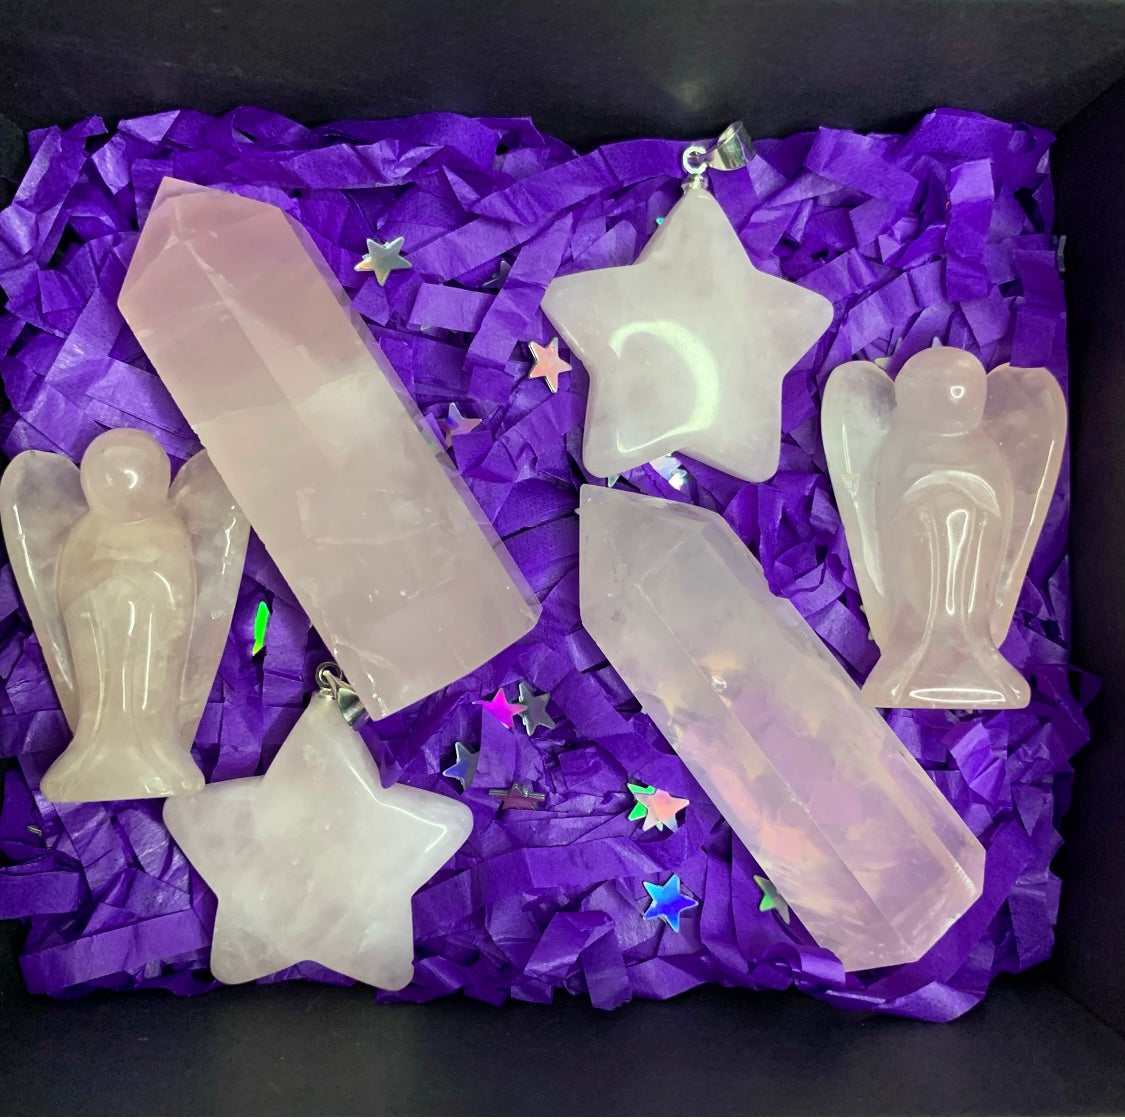 Matching Crystal Rose Quartz Gift Set